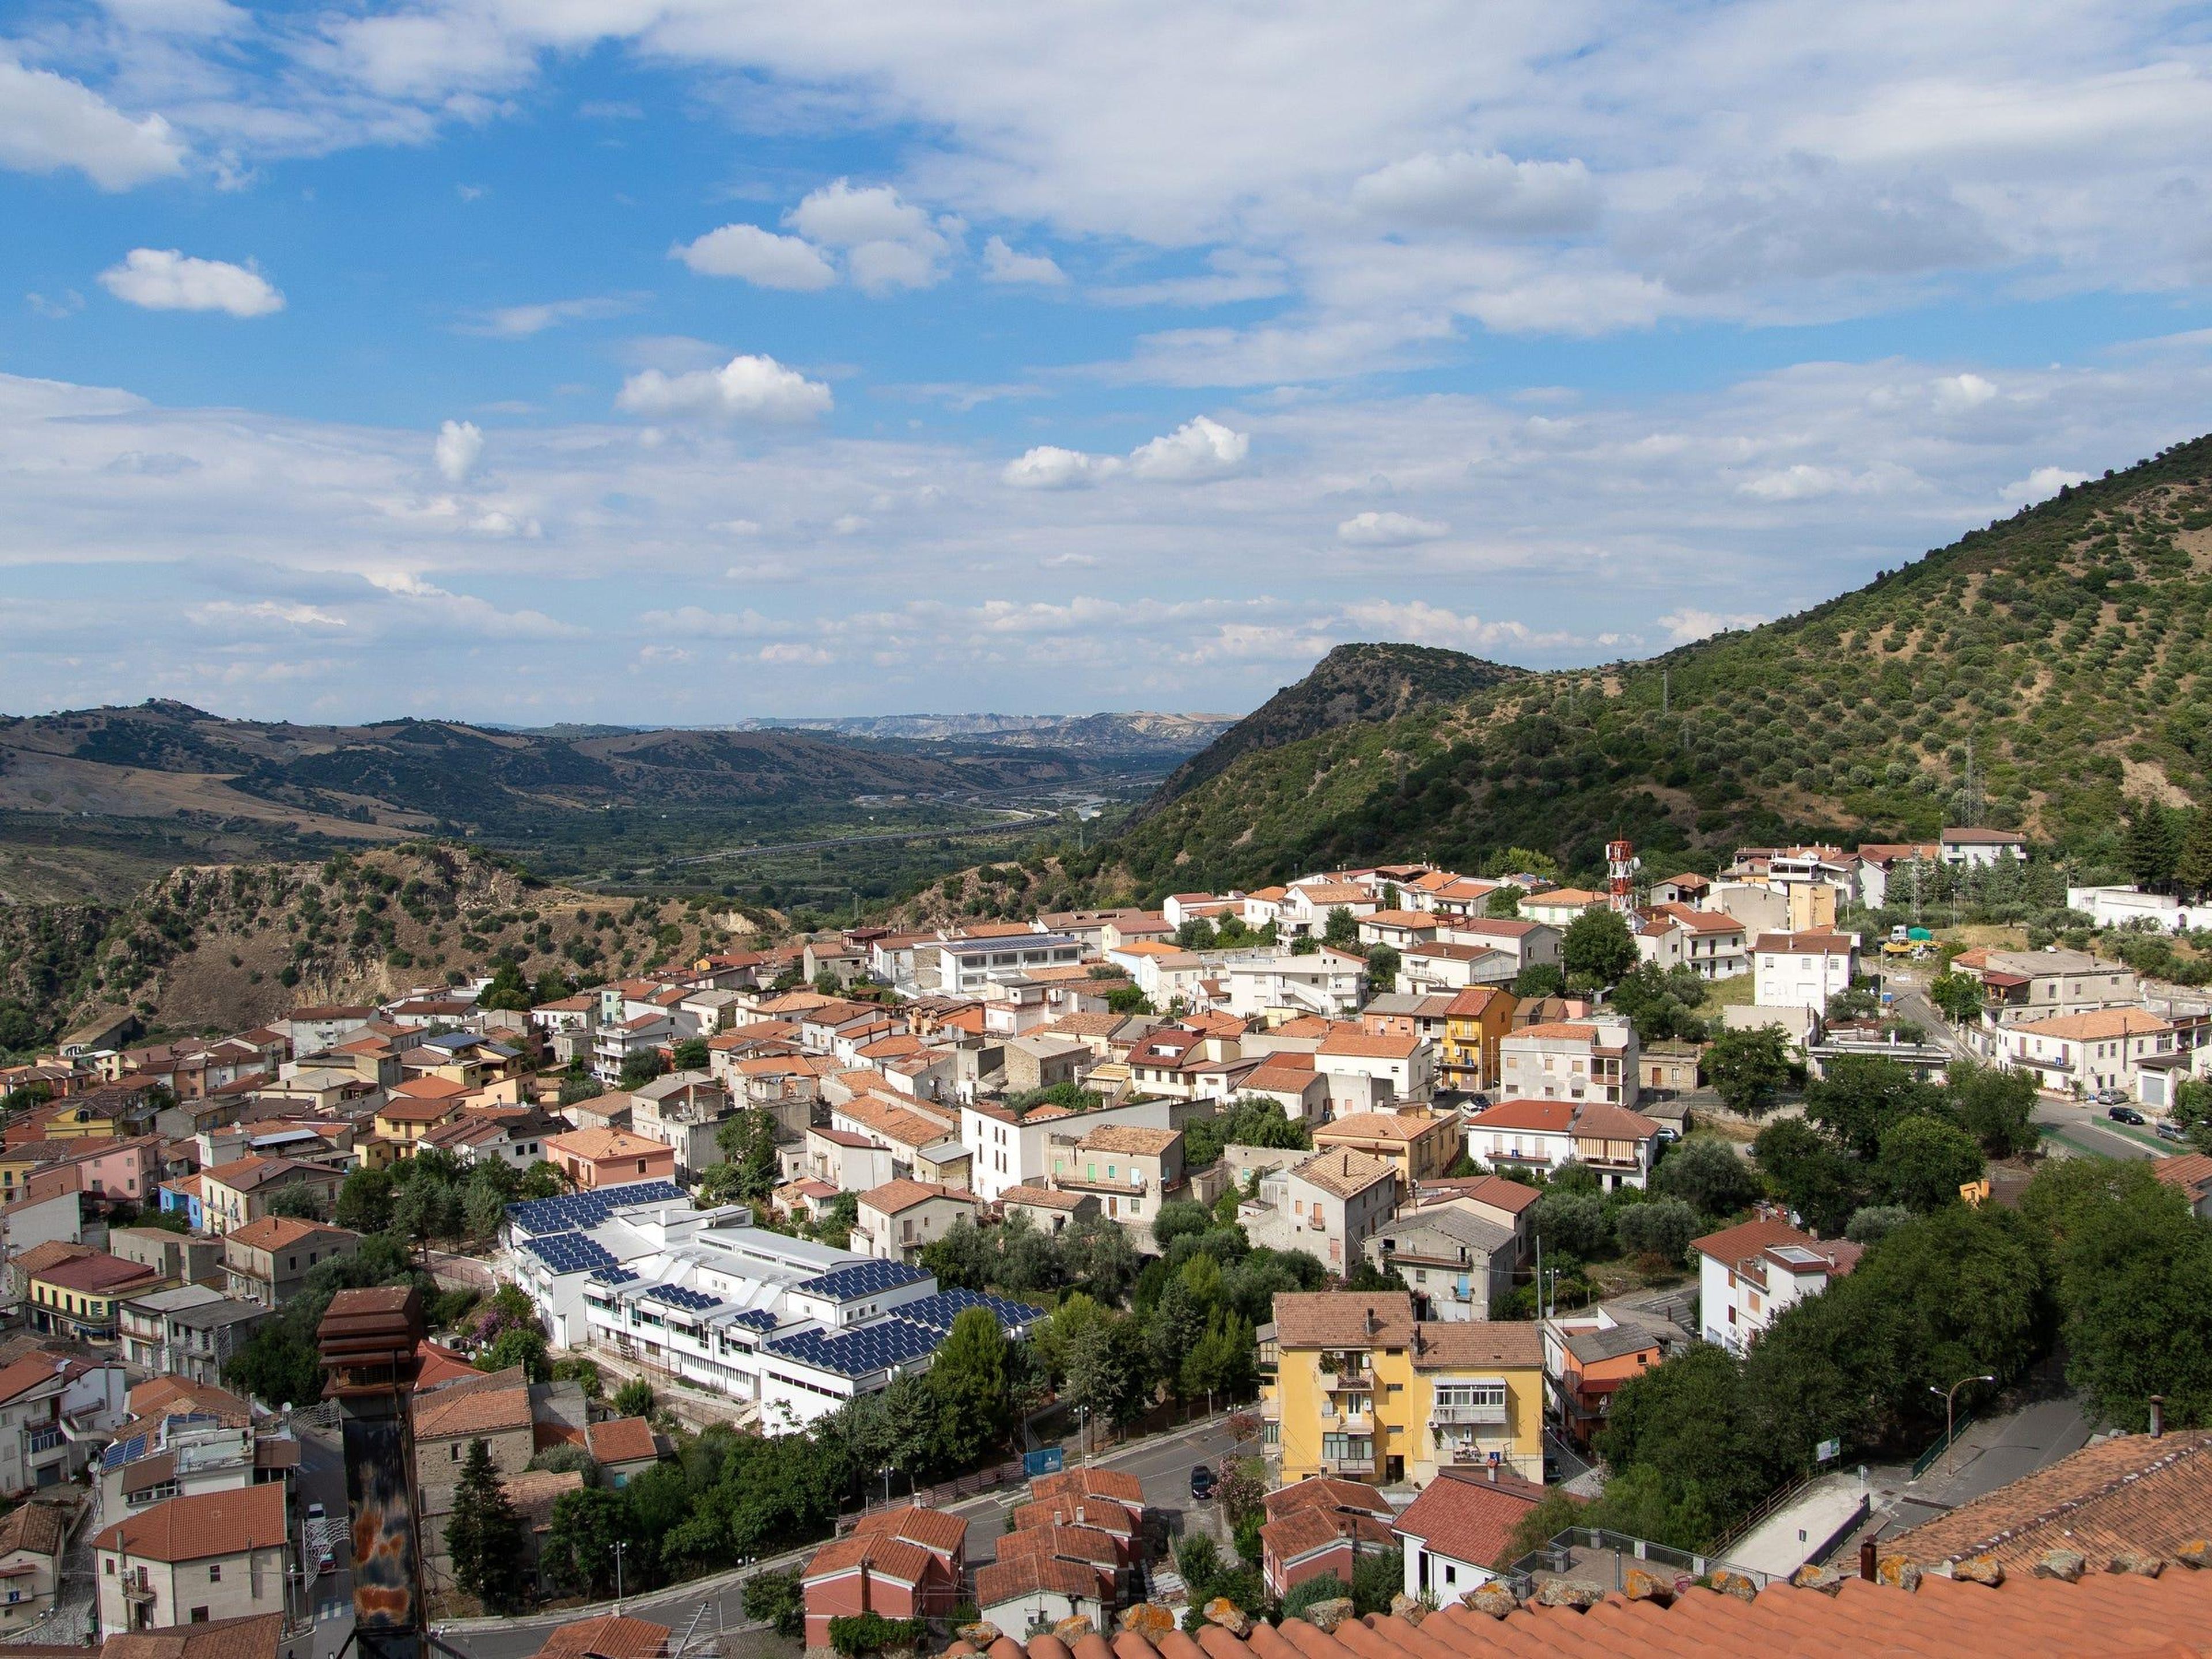 Una vista aérea de Valsinni, un pueblo del sur de Italia situado a unas tres horas de Cinquefrondi.